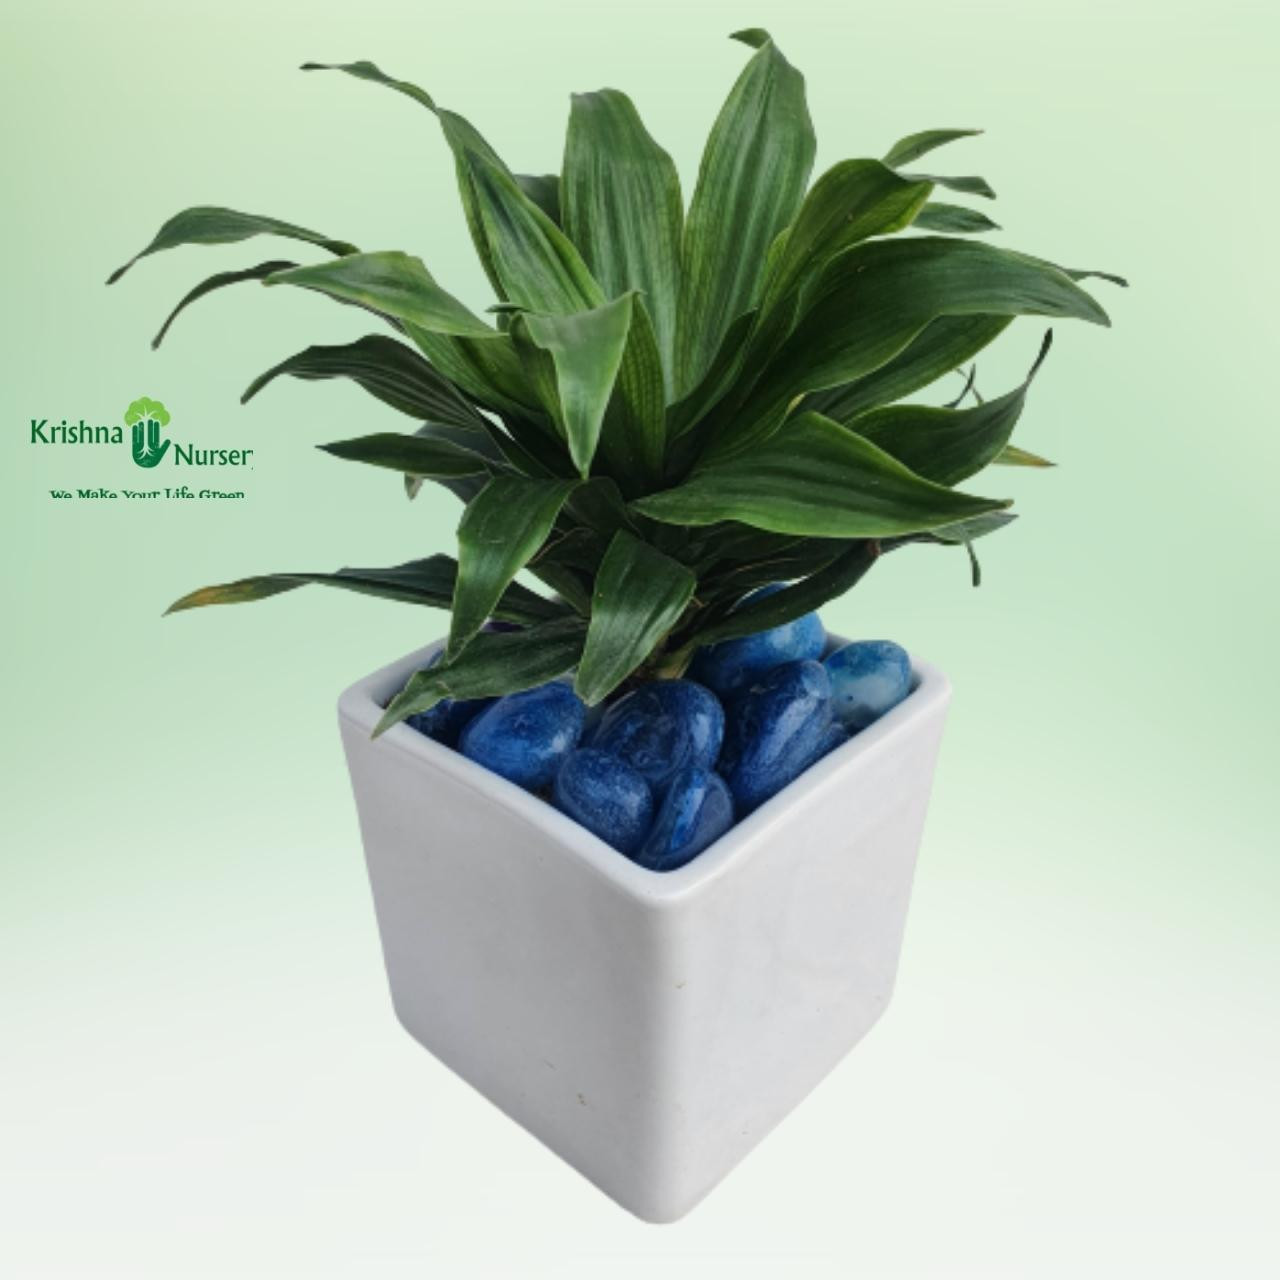 Dracaena Compacta Plant With Ceramic Pot & Pebbles - Gifting Plants -  - dracaena-compacta-plant-with-ceramic-pot-pebbles -   